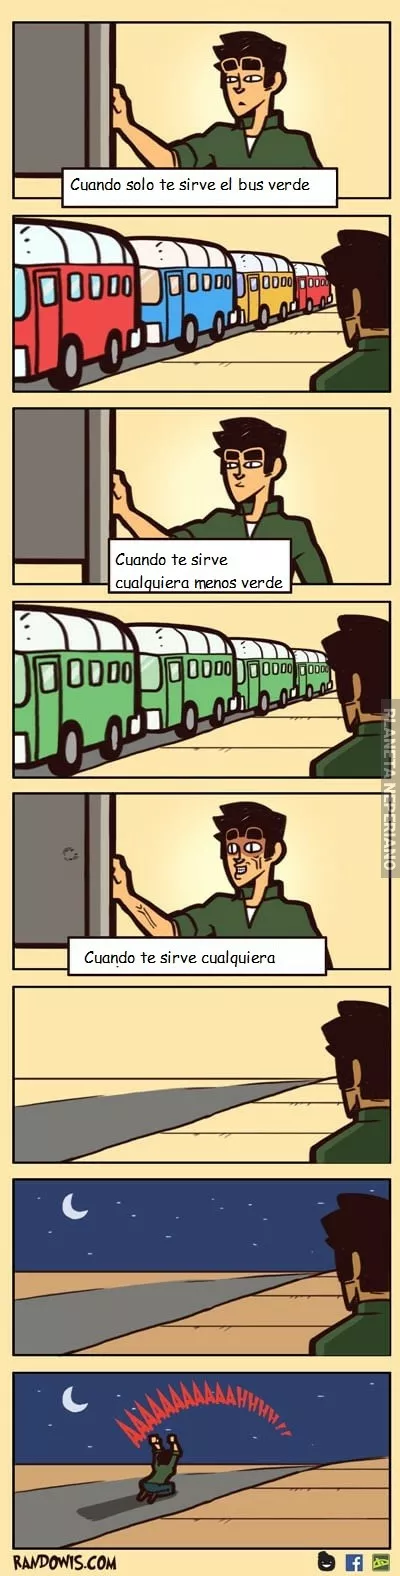 El drama de los autobuses